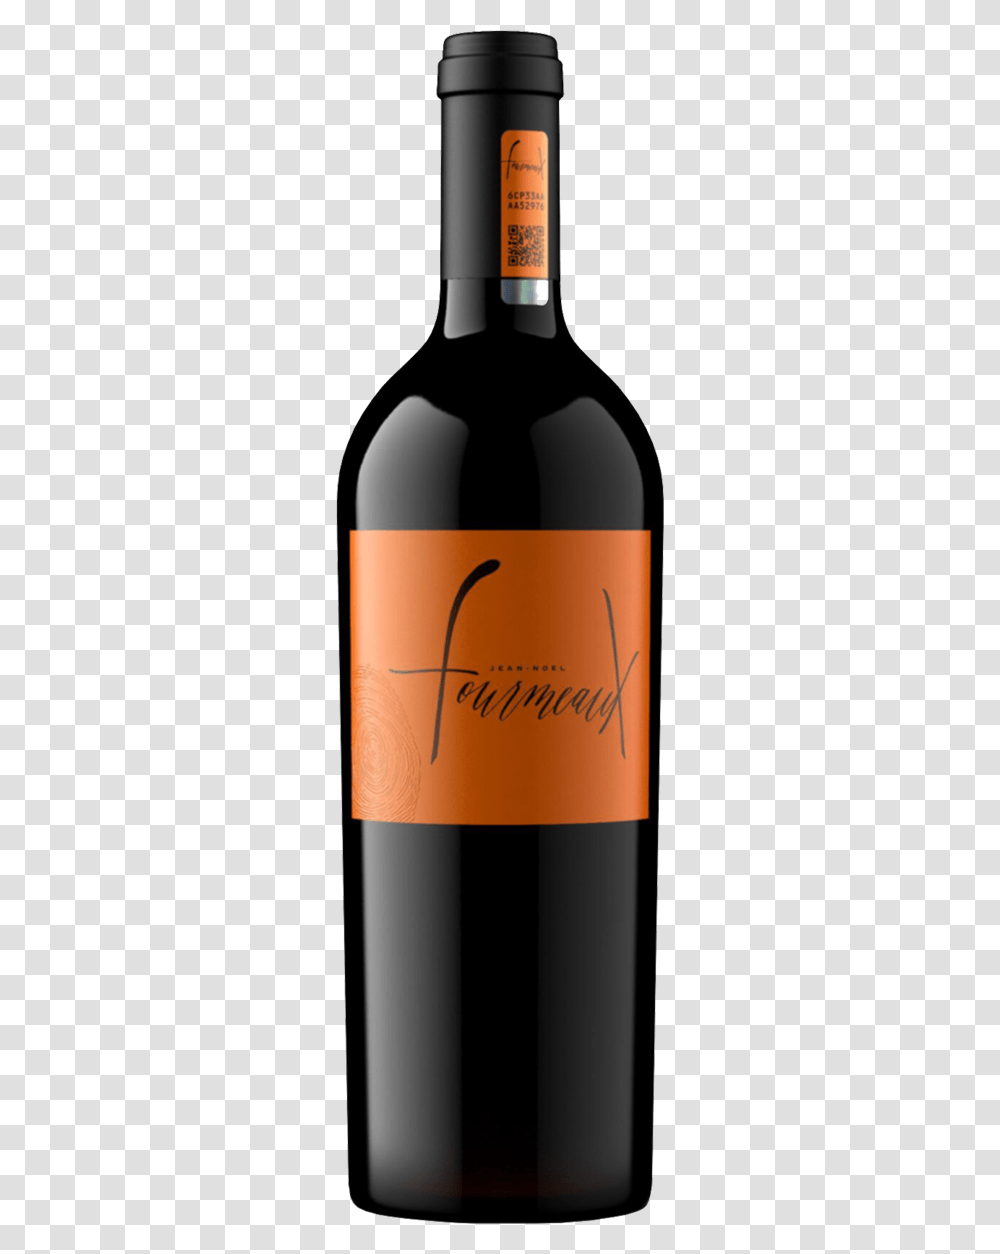 Fourmeaux Wine Canepa Finisimo Cabernet Sauvignon, Alcohol, Beverage, Drink, Bottle Transparent Png